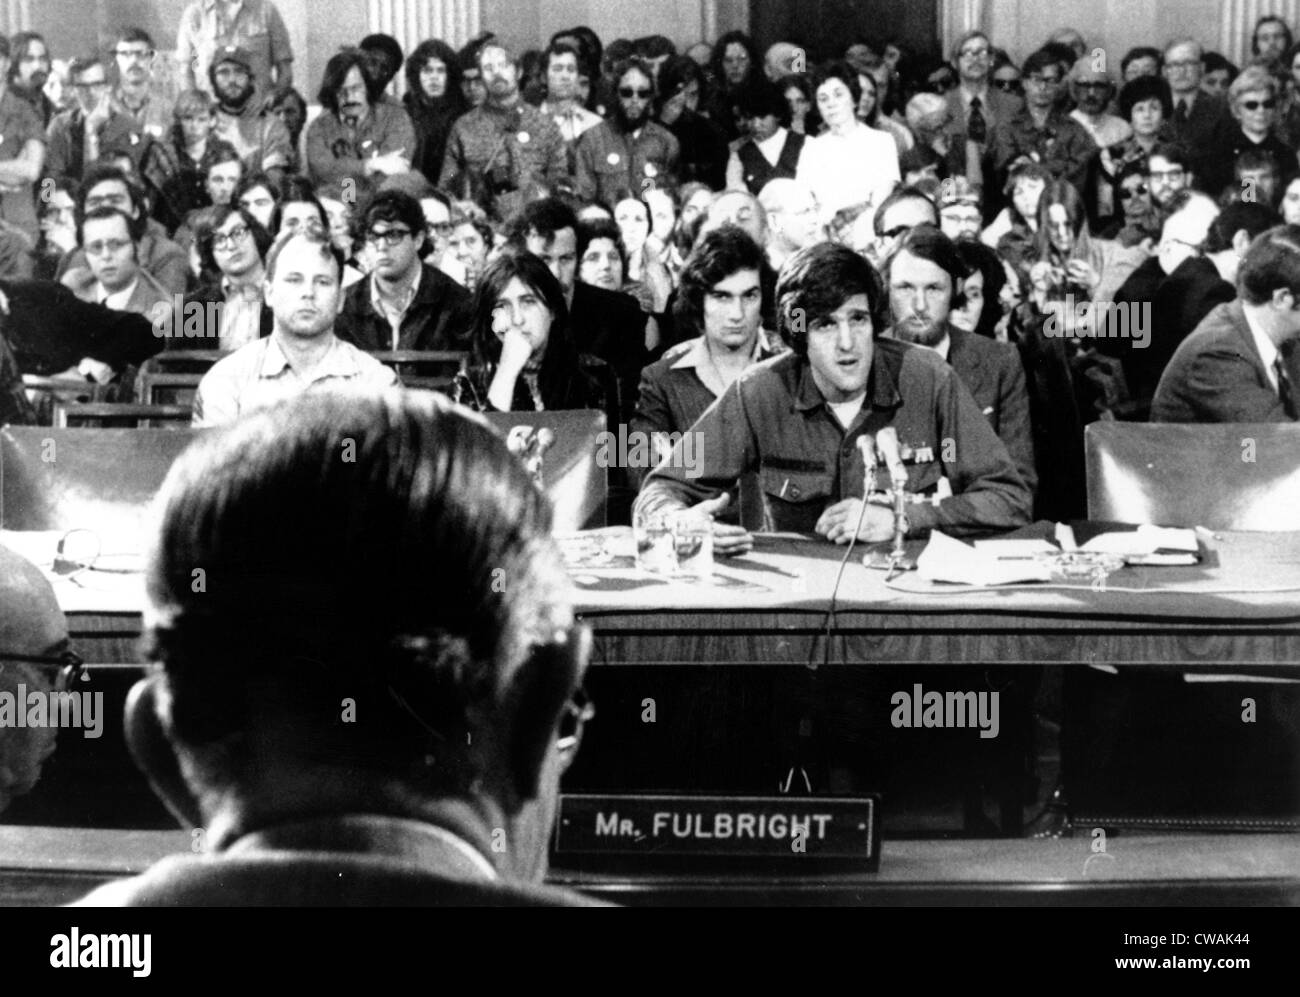 John Kerry dando testimonianza contro la guerra al senatore J. William Fulbright (torna alla telecamera), 4/22/1971. La cortesia: Archivi CSU Foto Stock